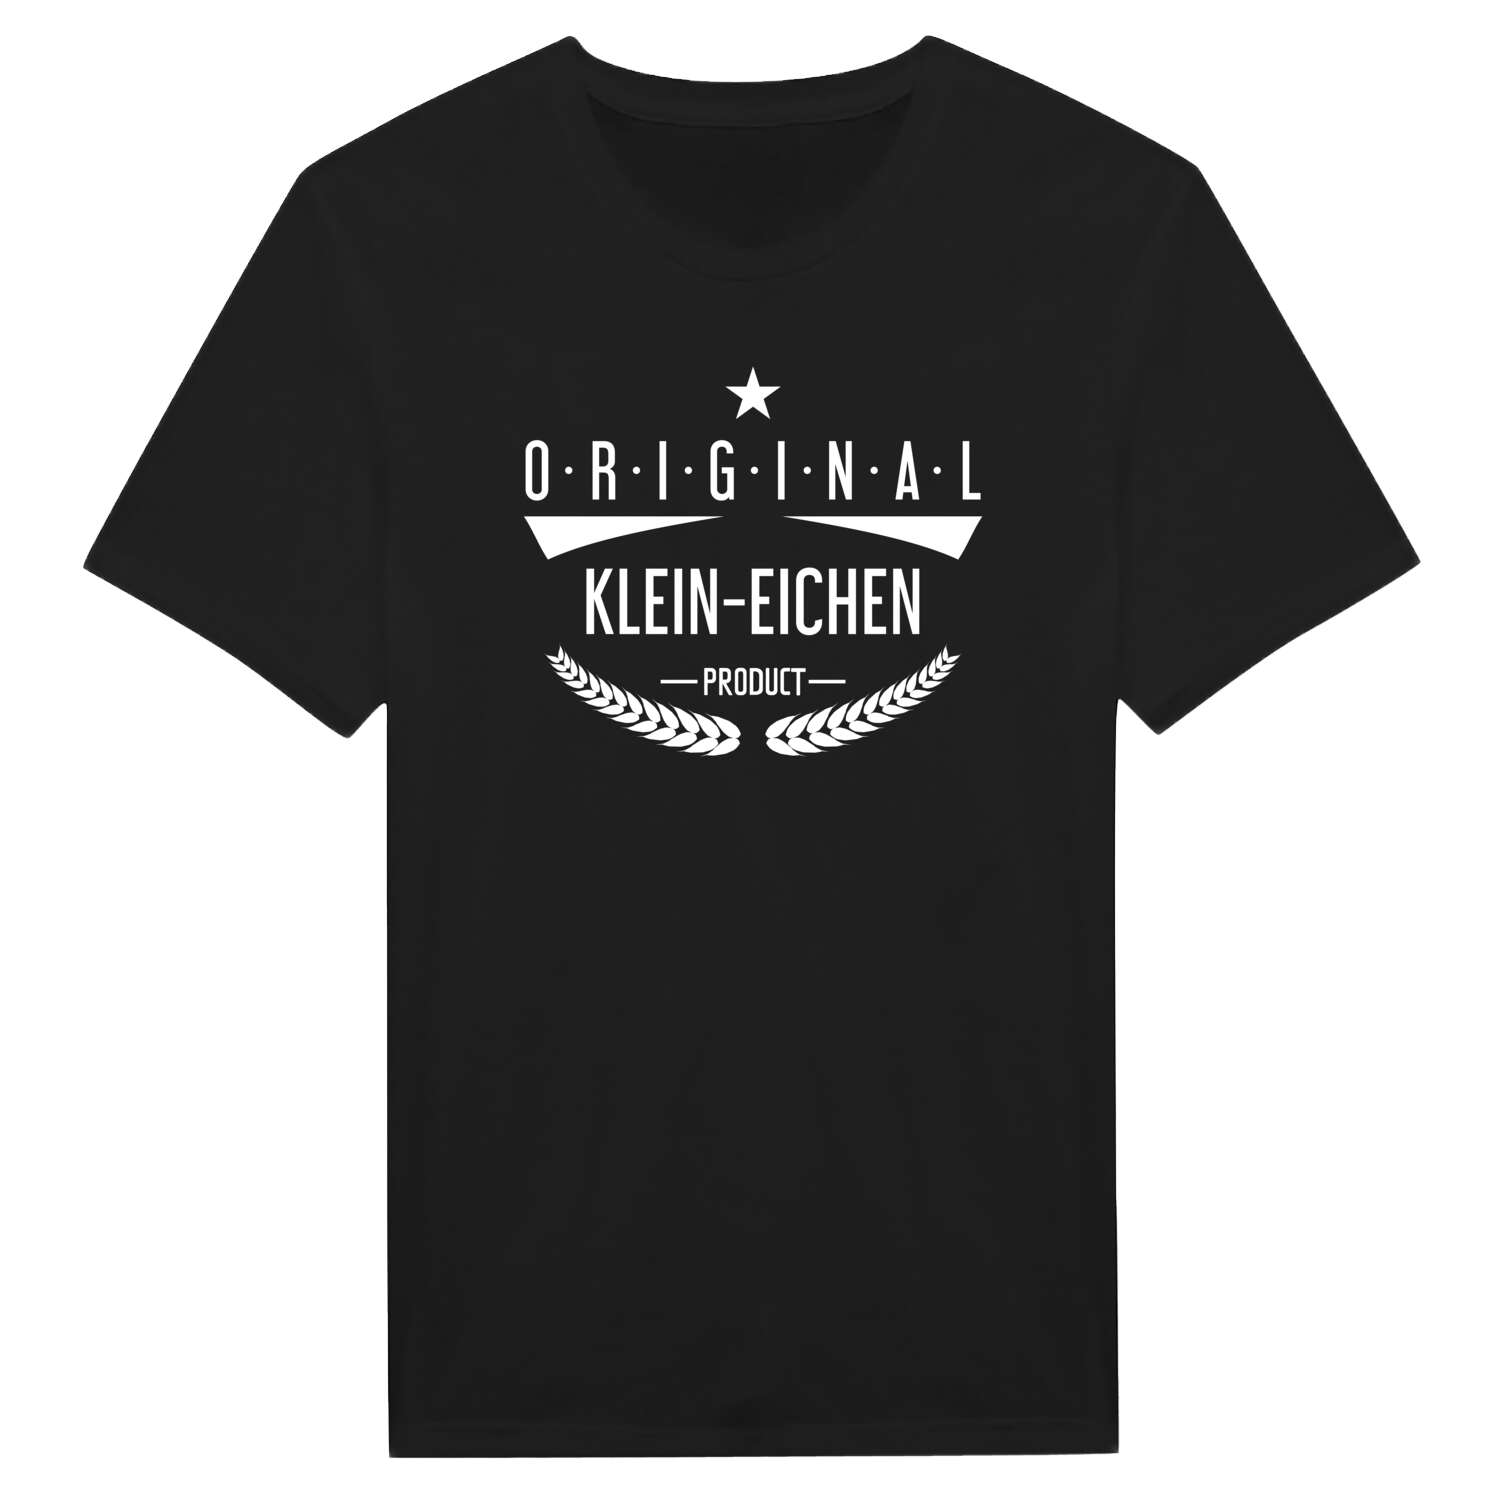 Klein-Eichen T-Shirt »Original Product«